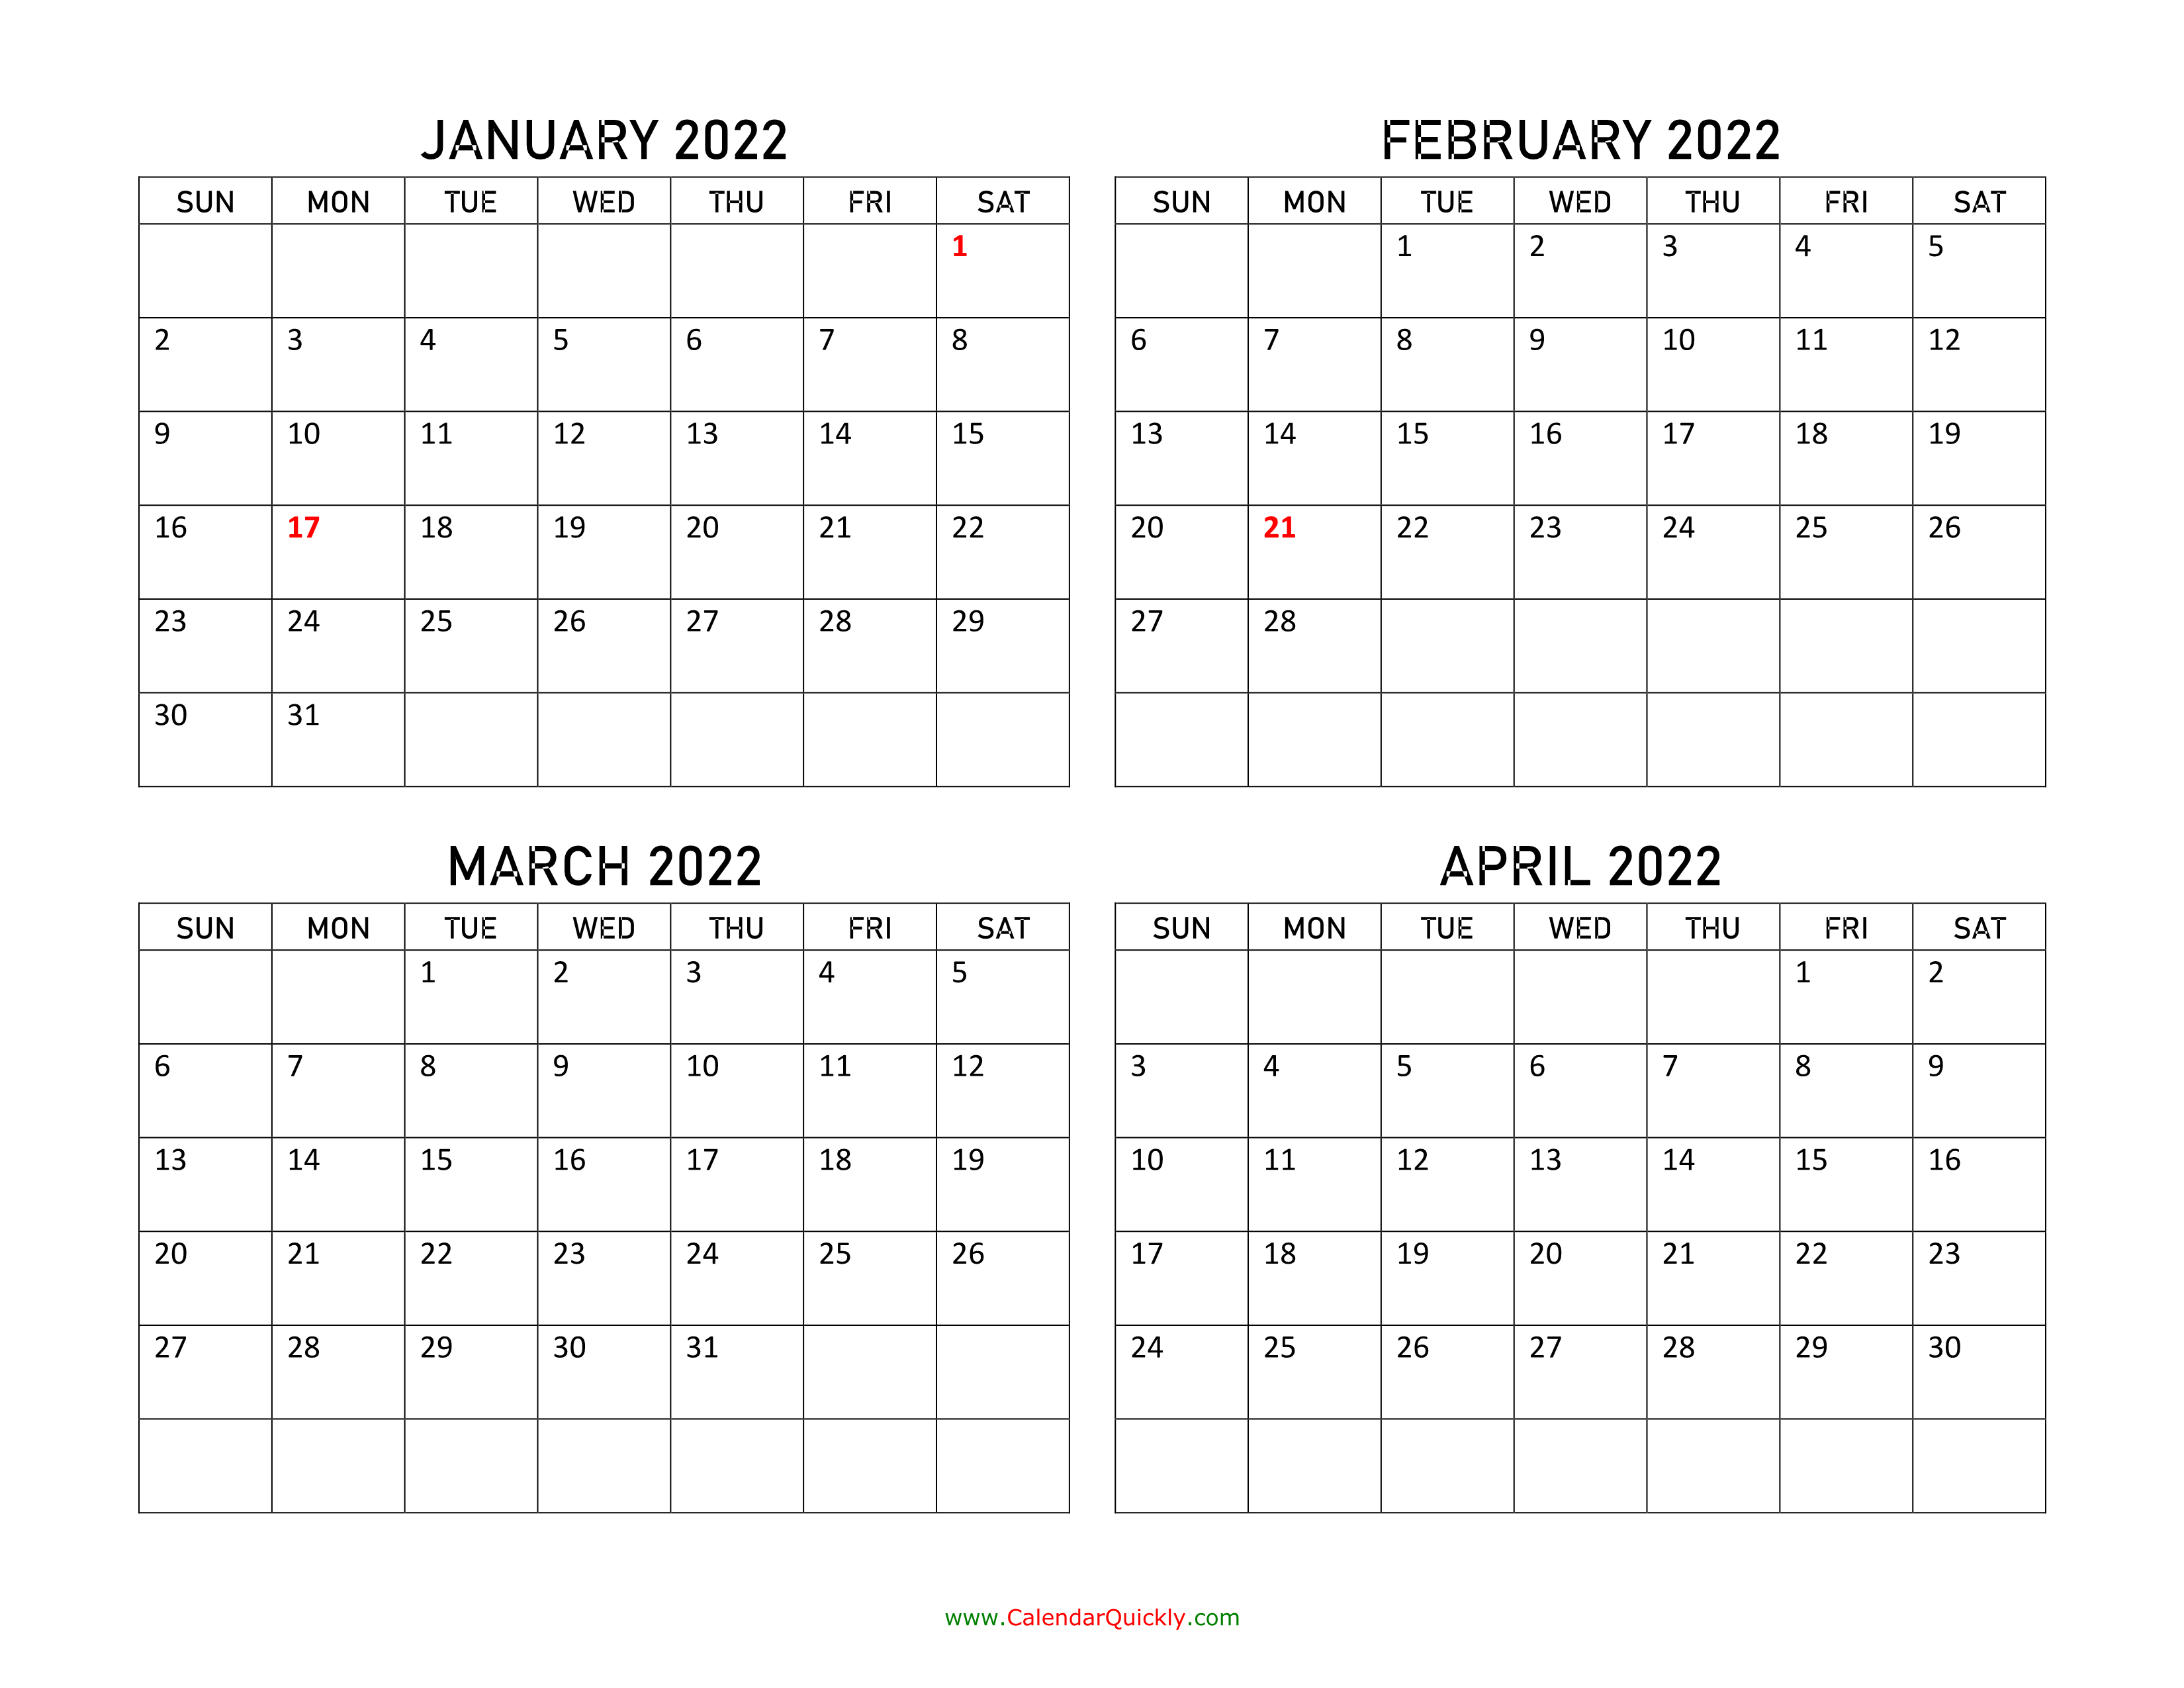 January to April 2022 Calendar Calendar Quickly